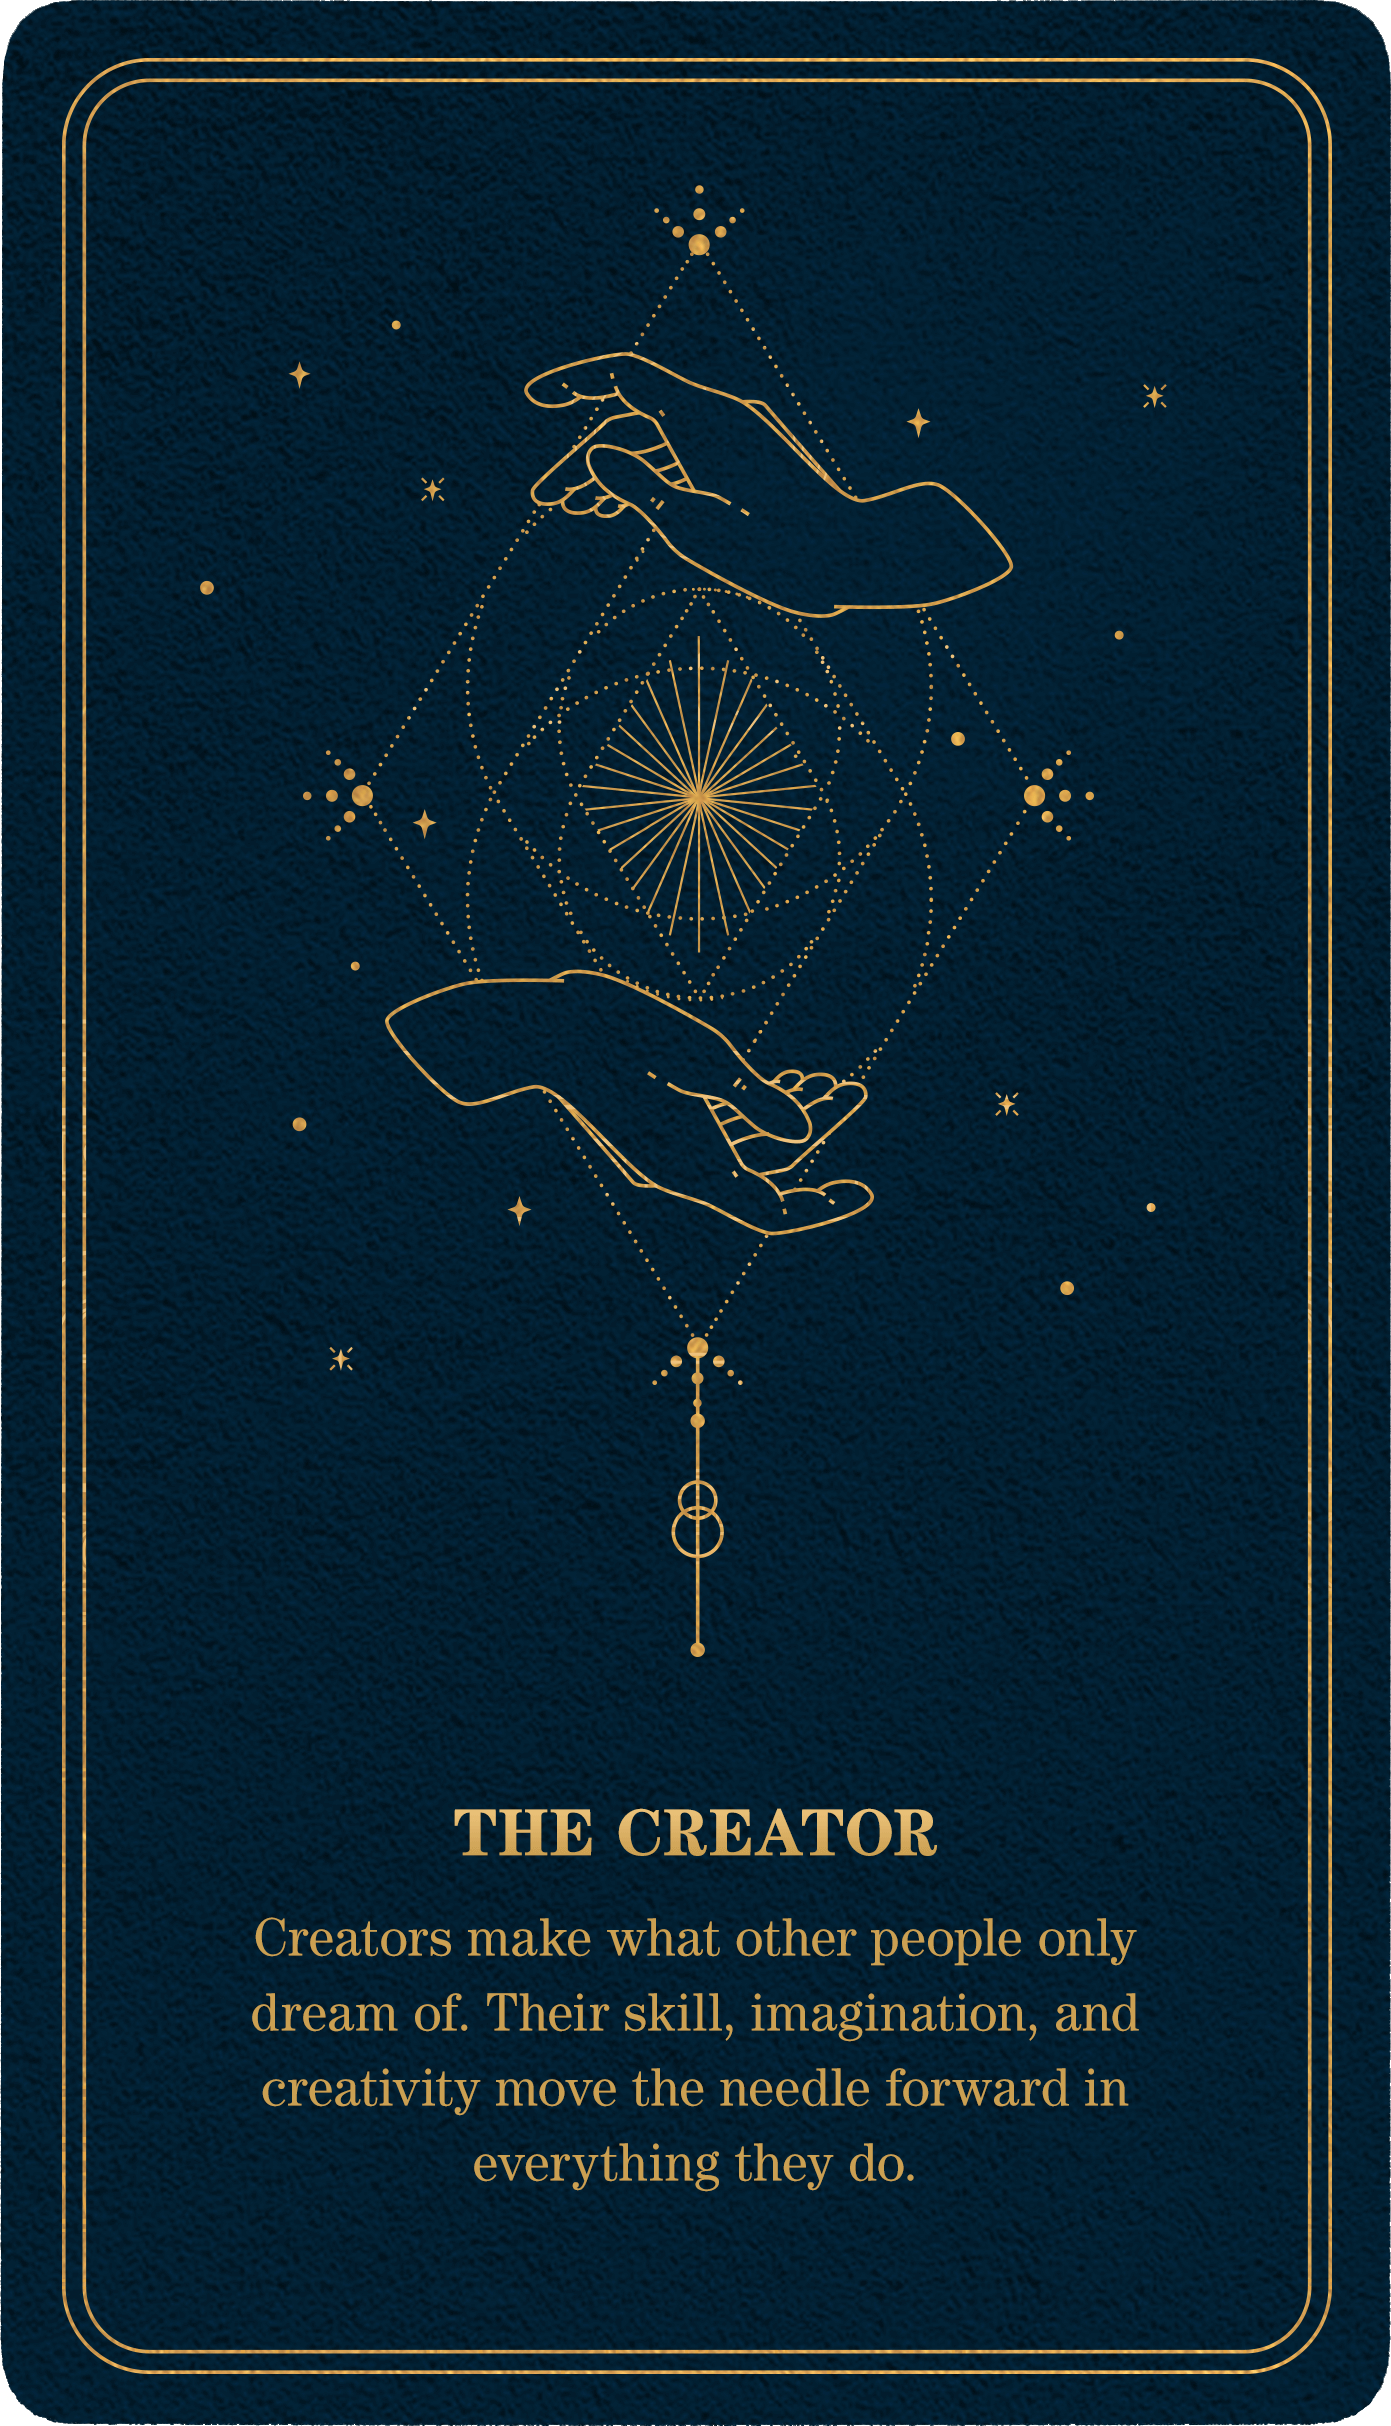 tarot-card-creator-1-1.png